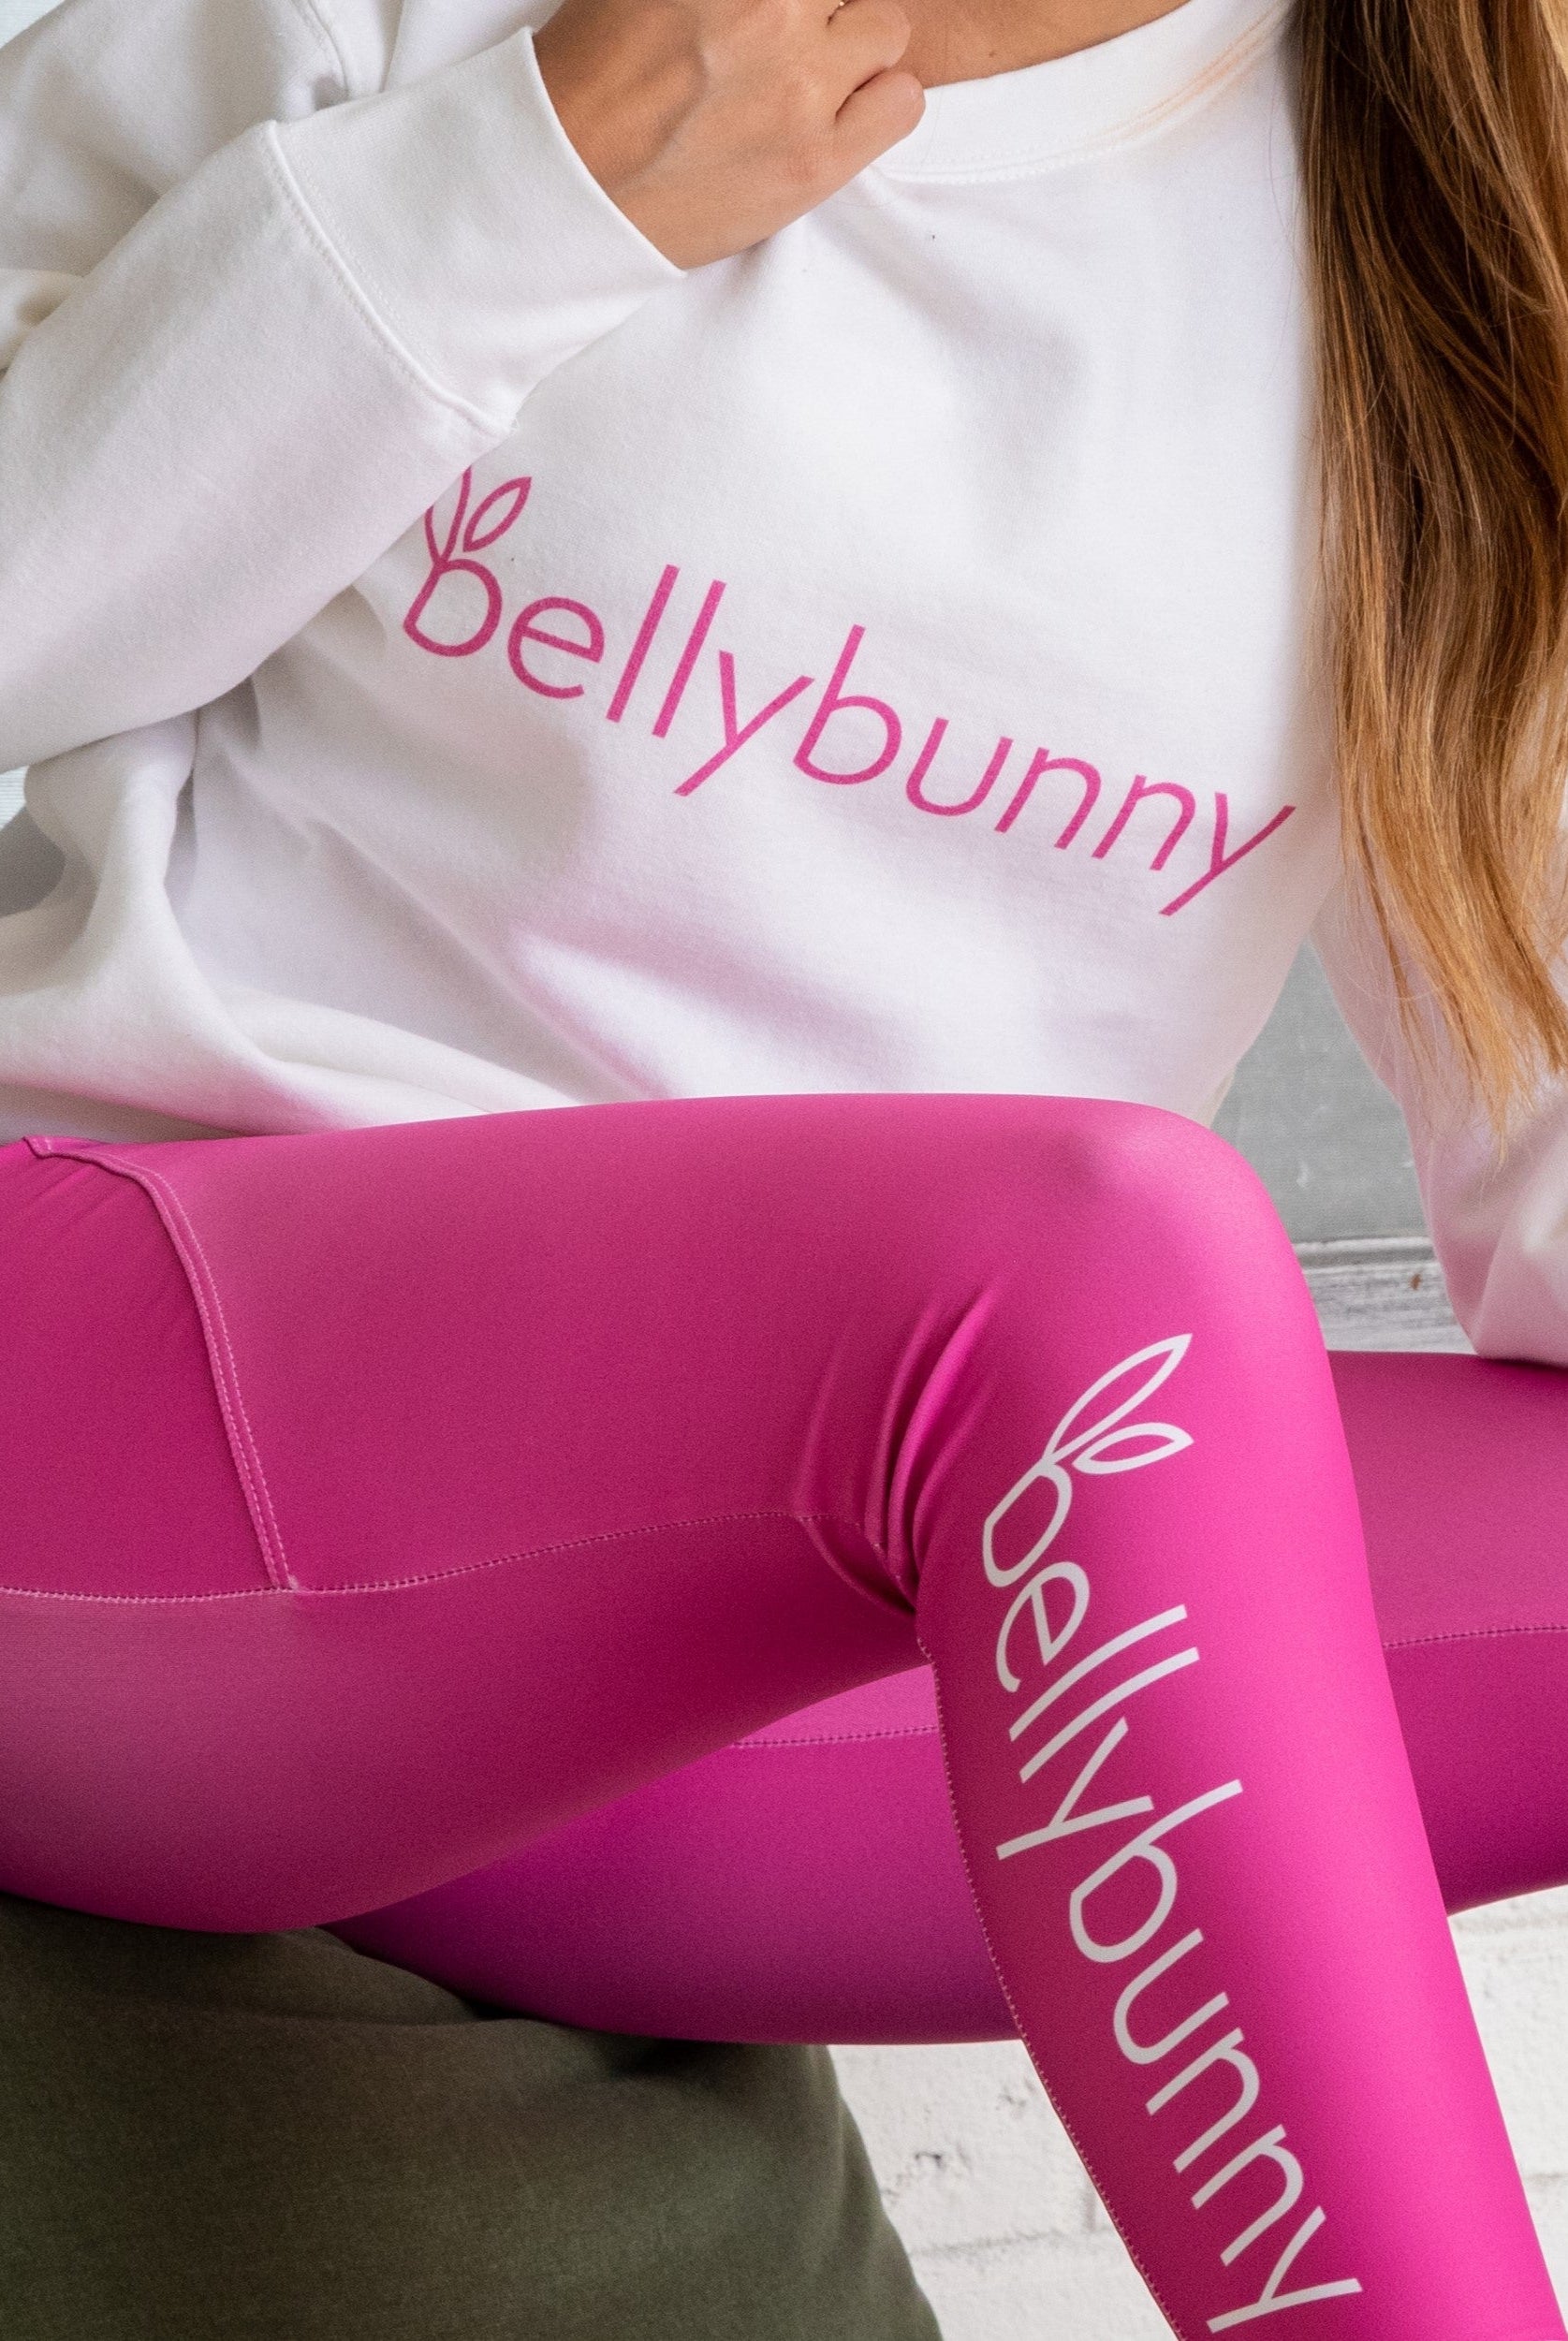 Bellybunny Women's Sweatshirt